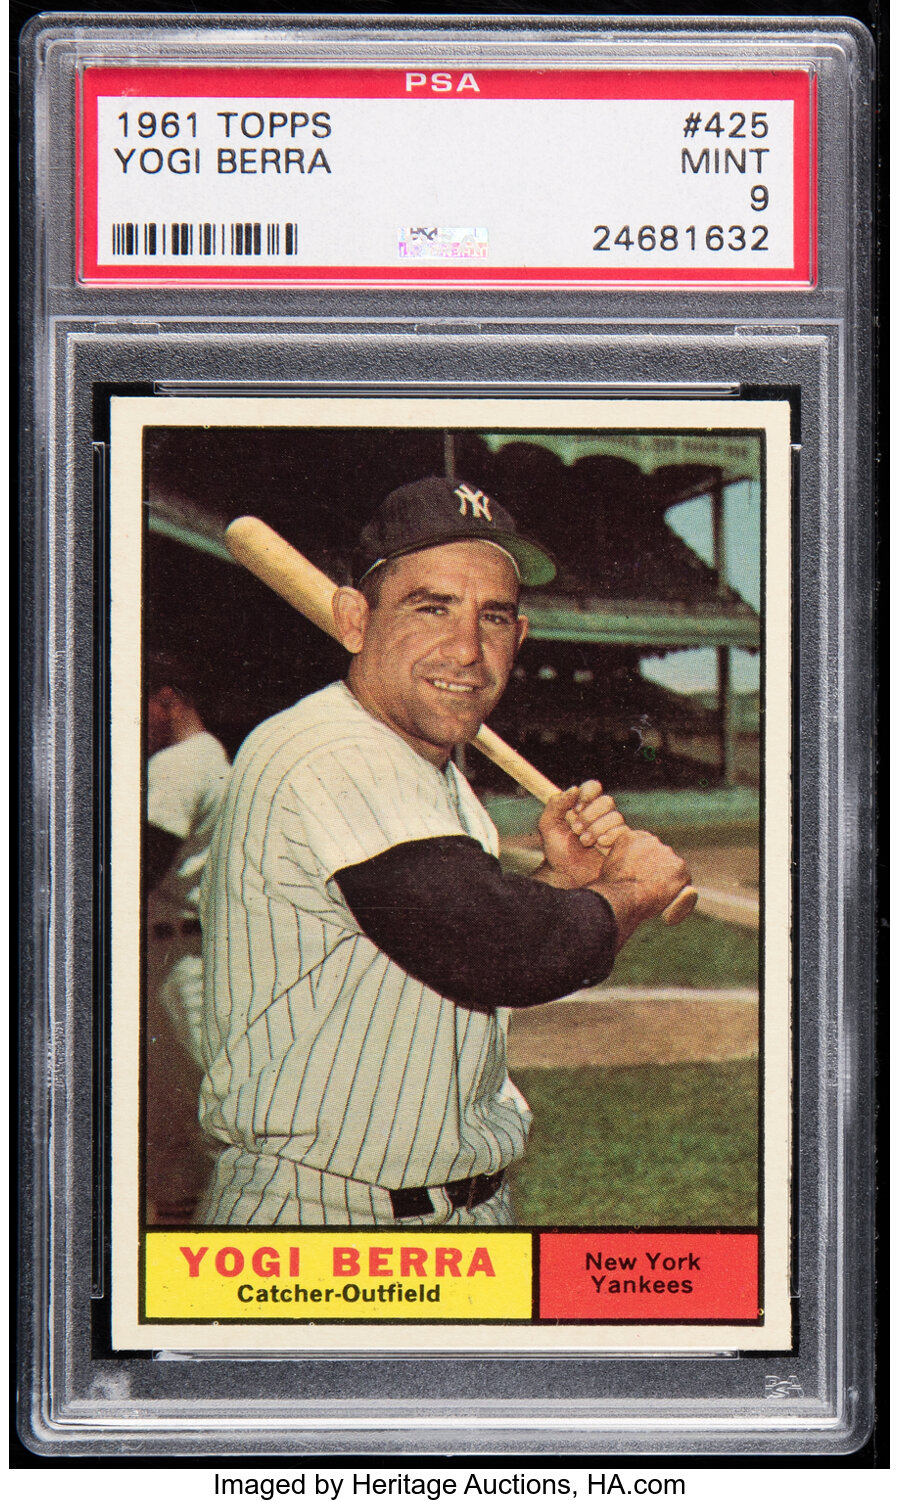 1961 Topps Yogi Berra #425 PSA Mint 9 - None Higher!